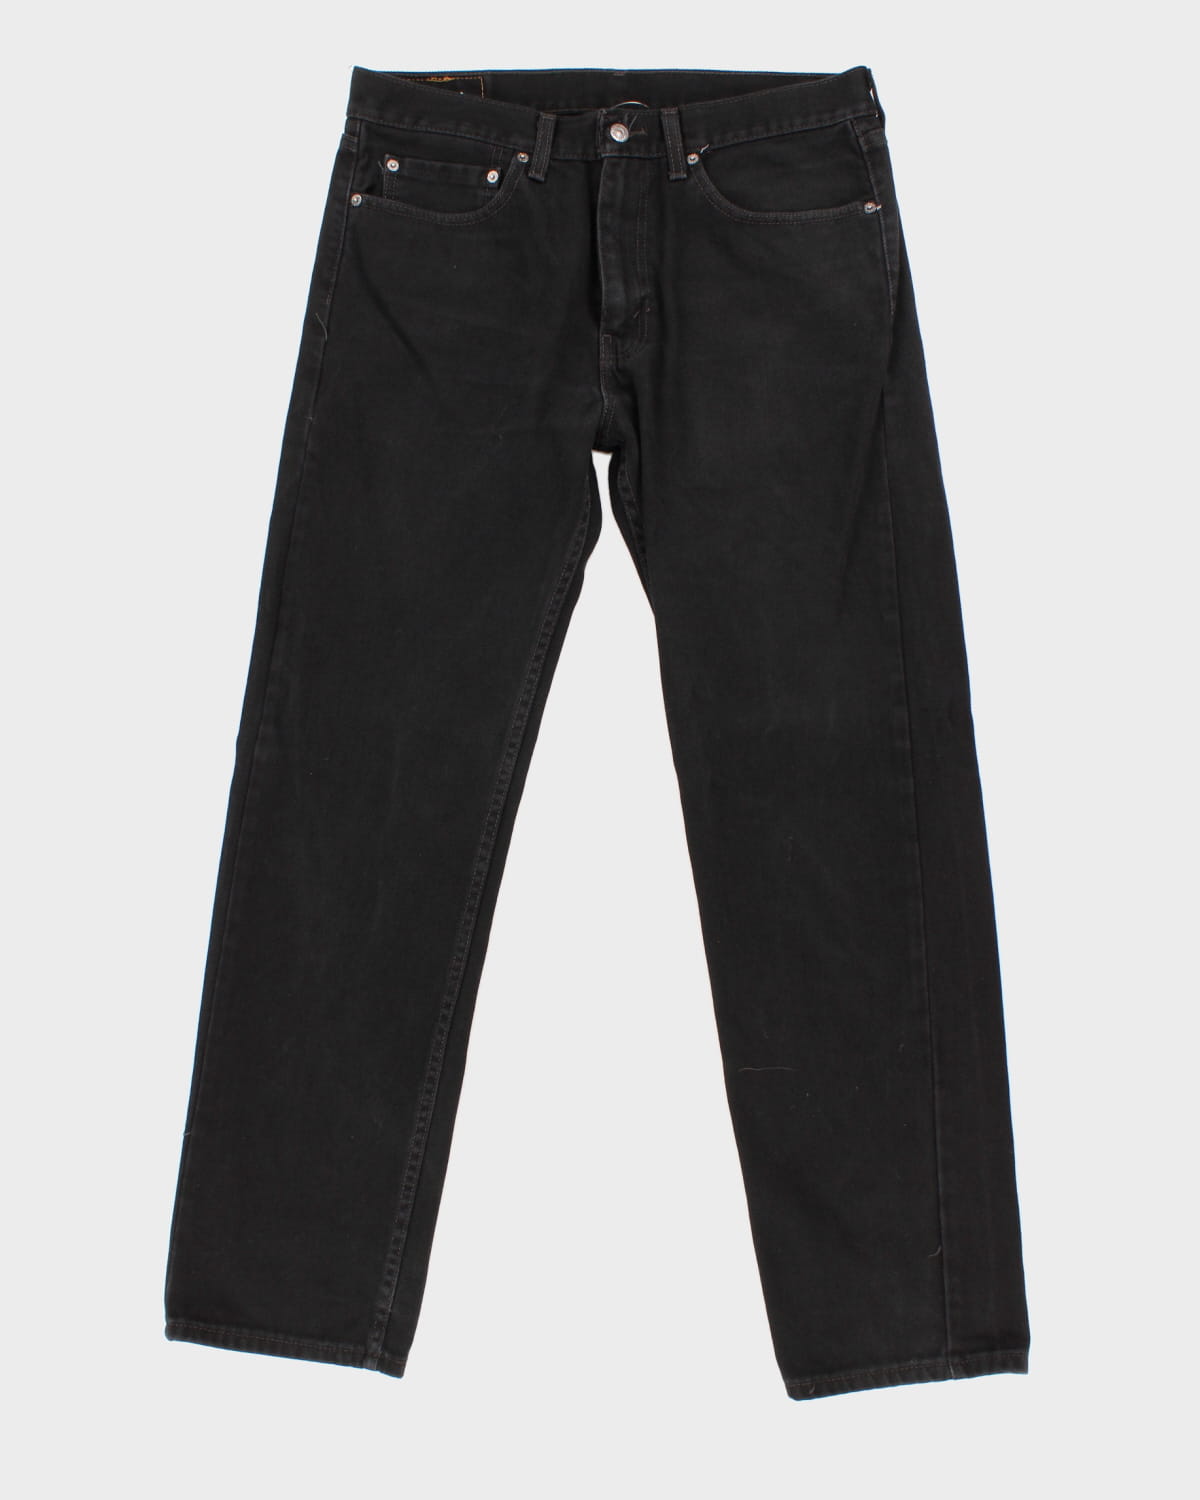 Levi's 505 Black Denim Jeans - W34 L32